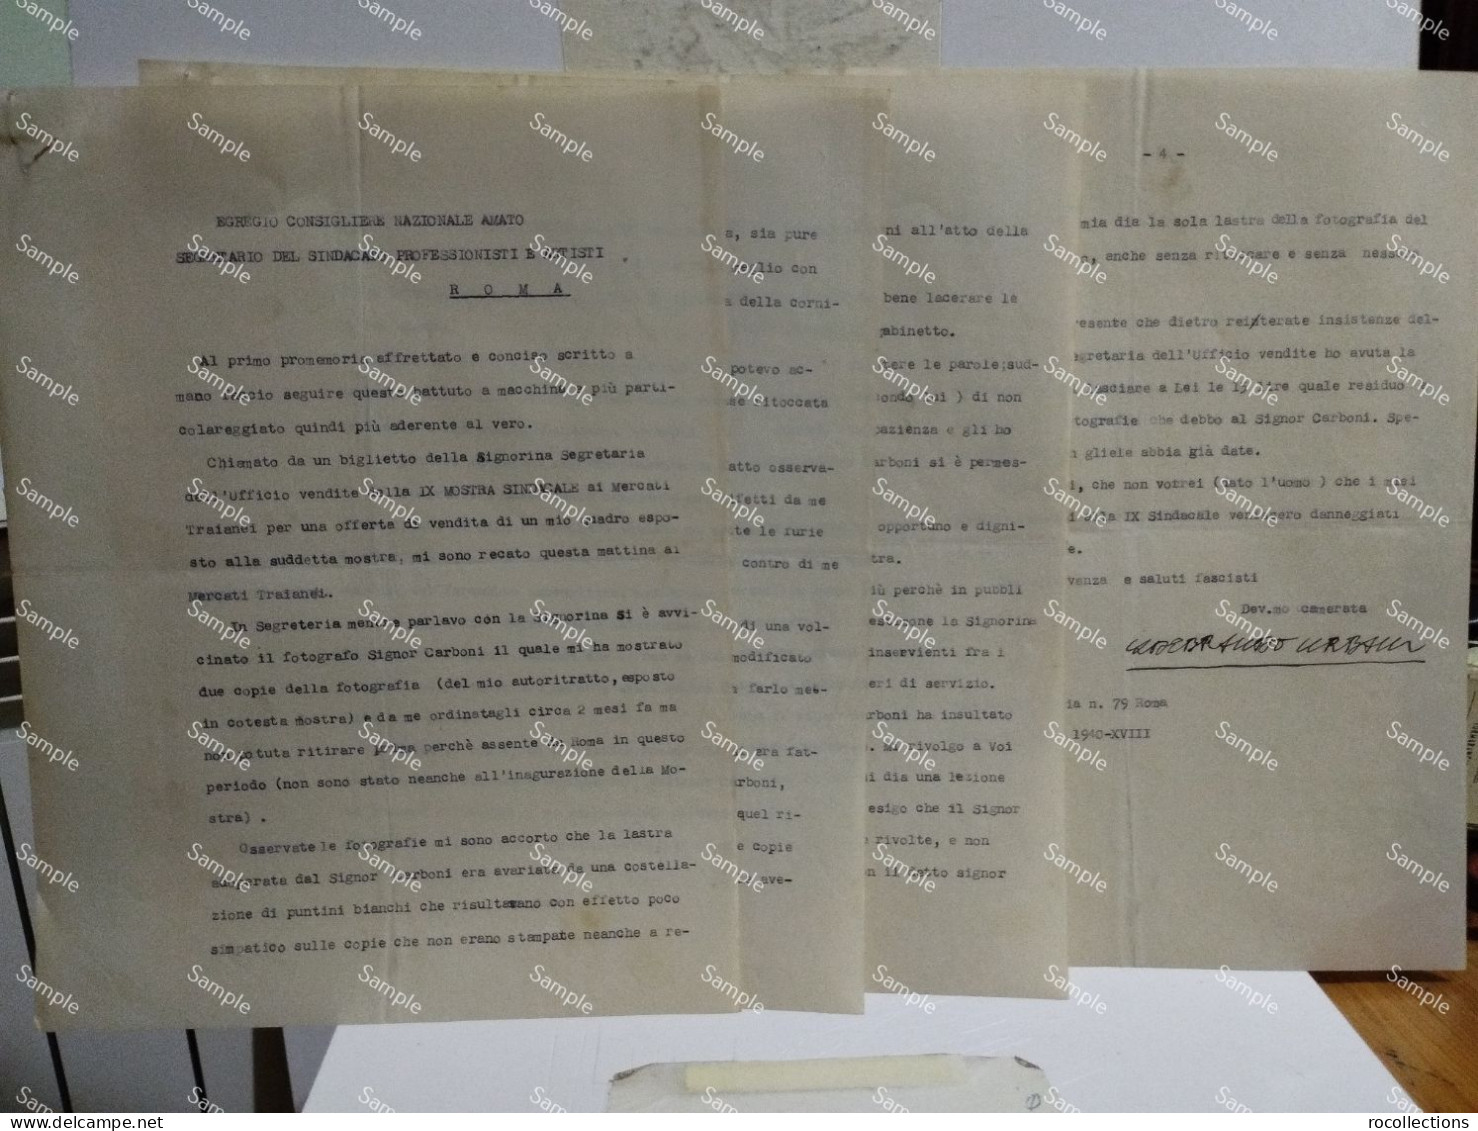 Lettere Firmate E Altro Di Incidente Fotografo CARLO CARBONI Con Artista ILDEBRANDO URBANI Roma 1940 Mercati Traianei - Pittori E Scultori